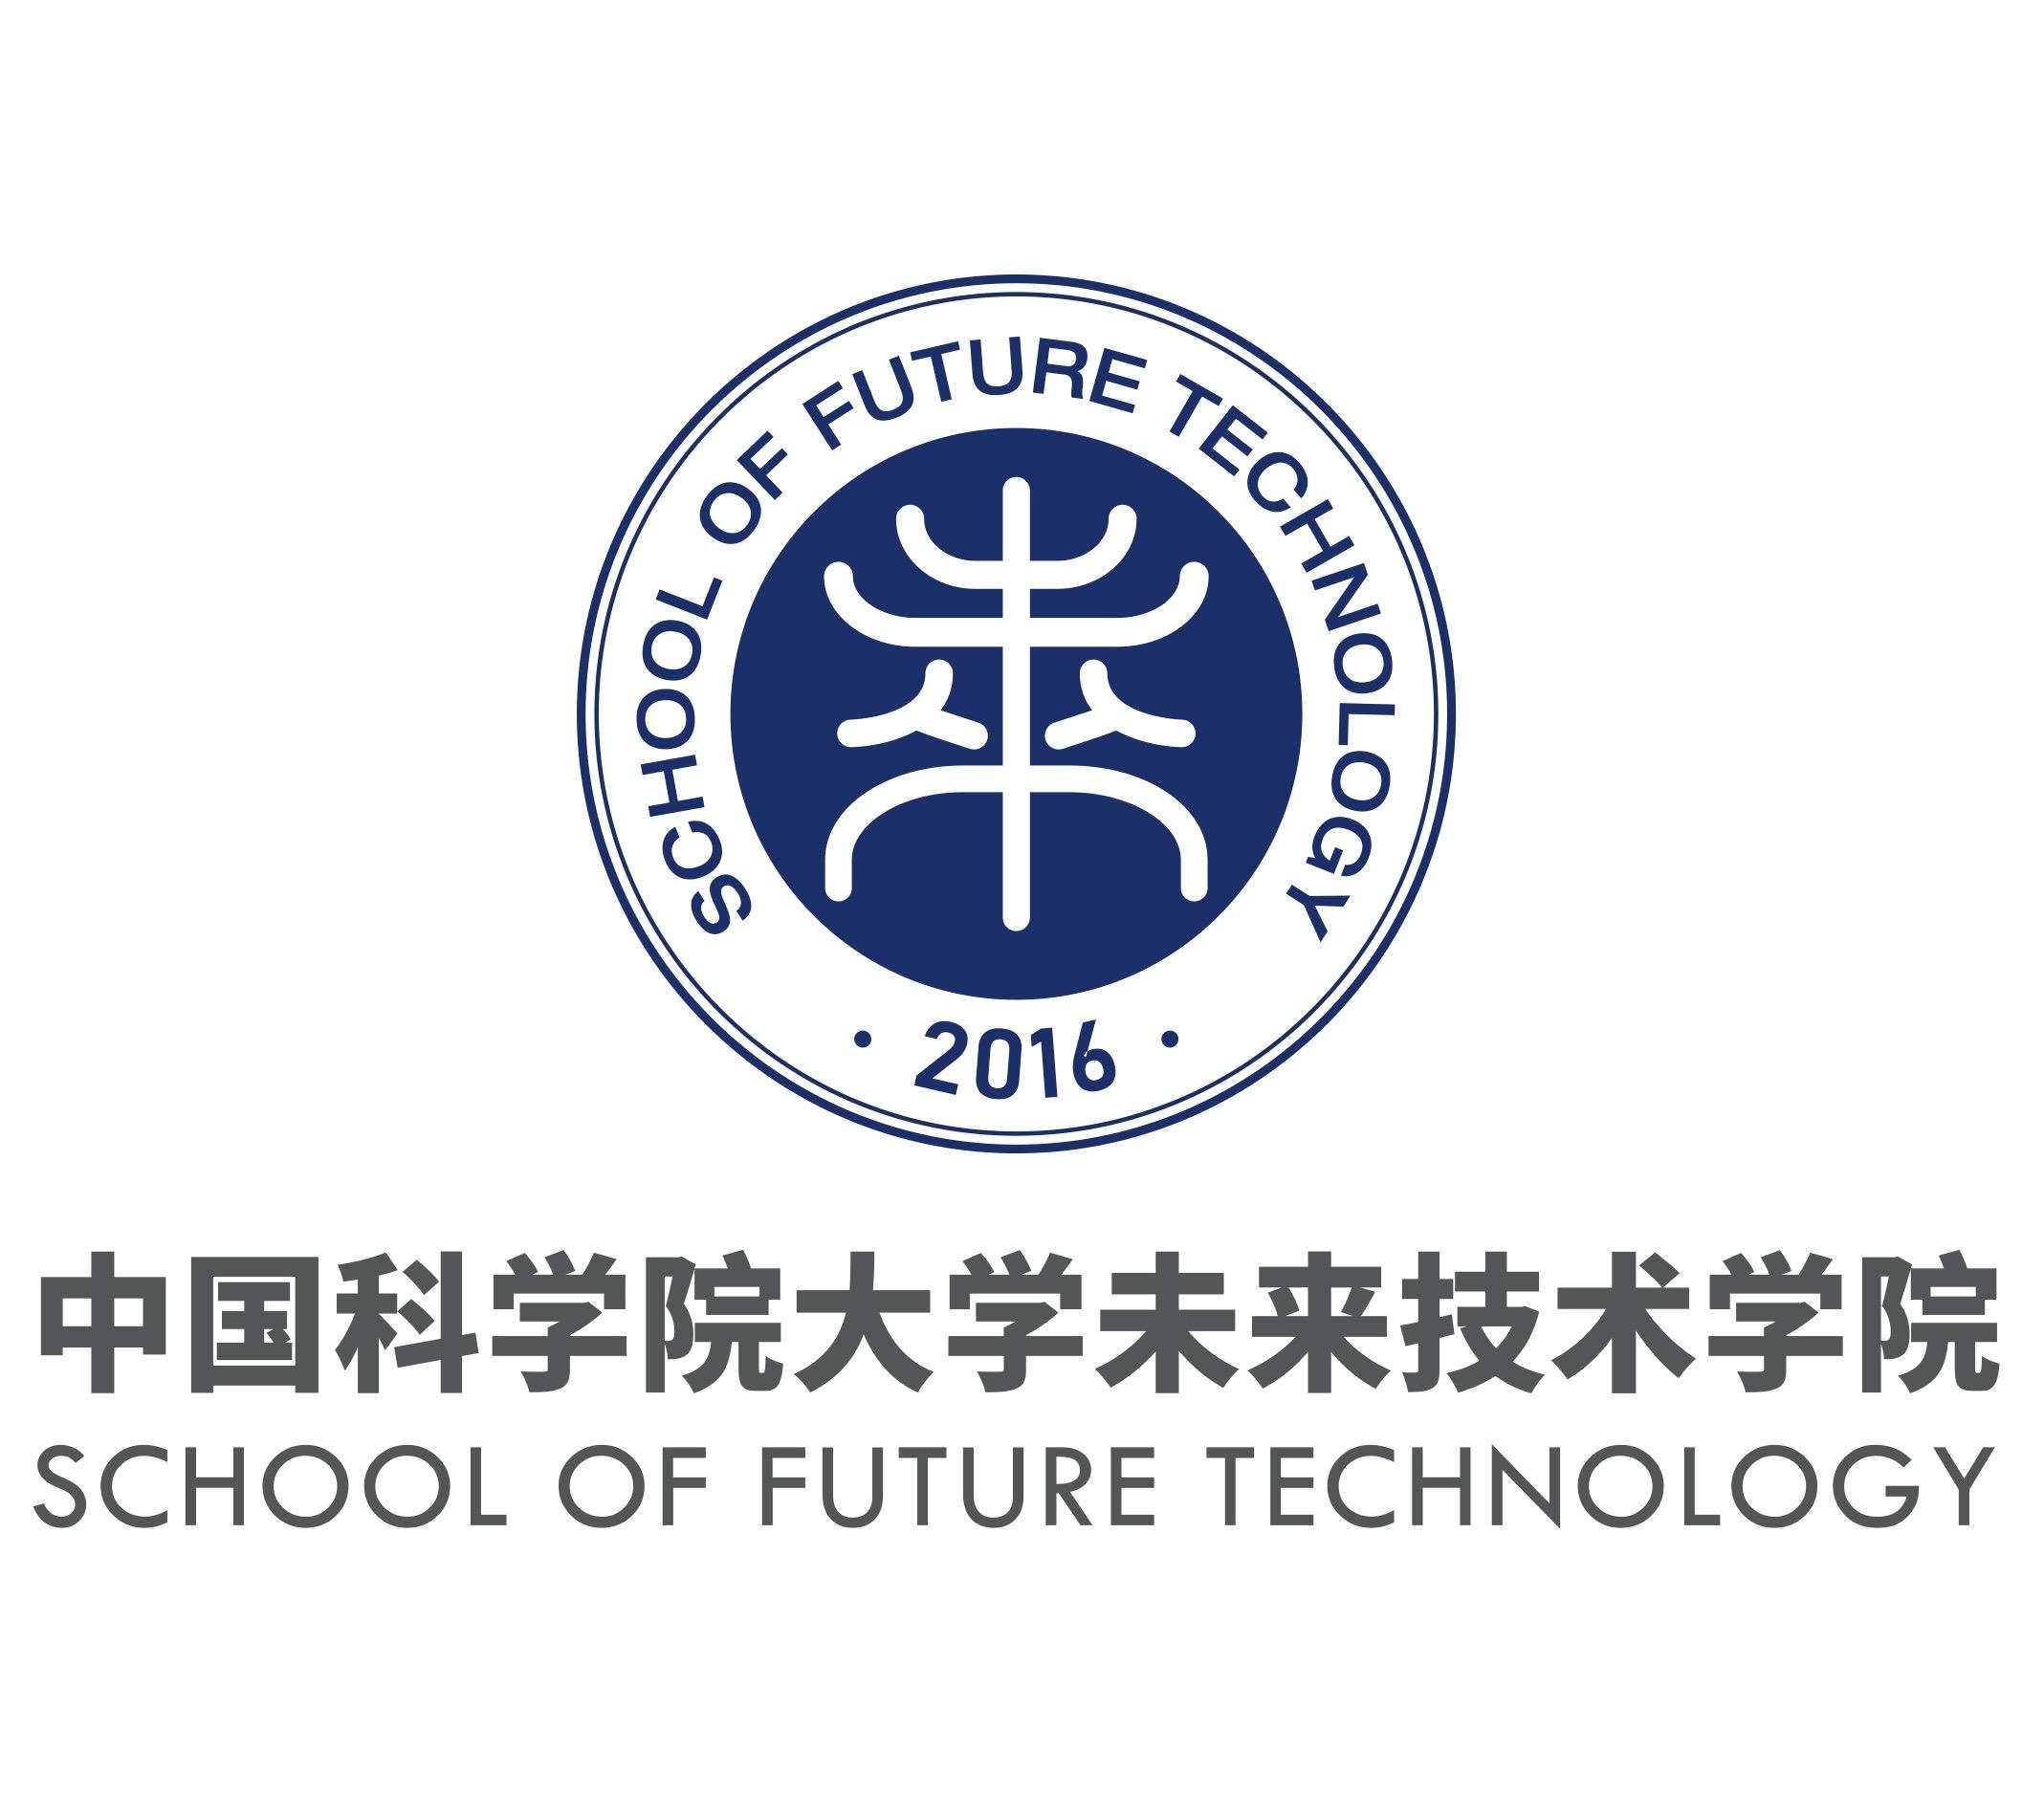 如何看待清华北大等 12 所一流大学获批首批「未来技术学院」?